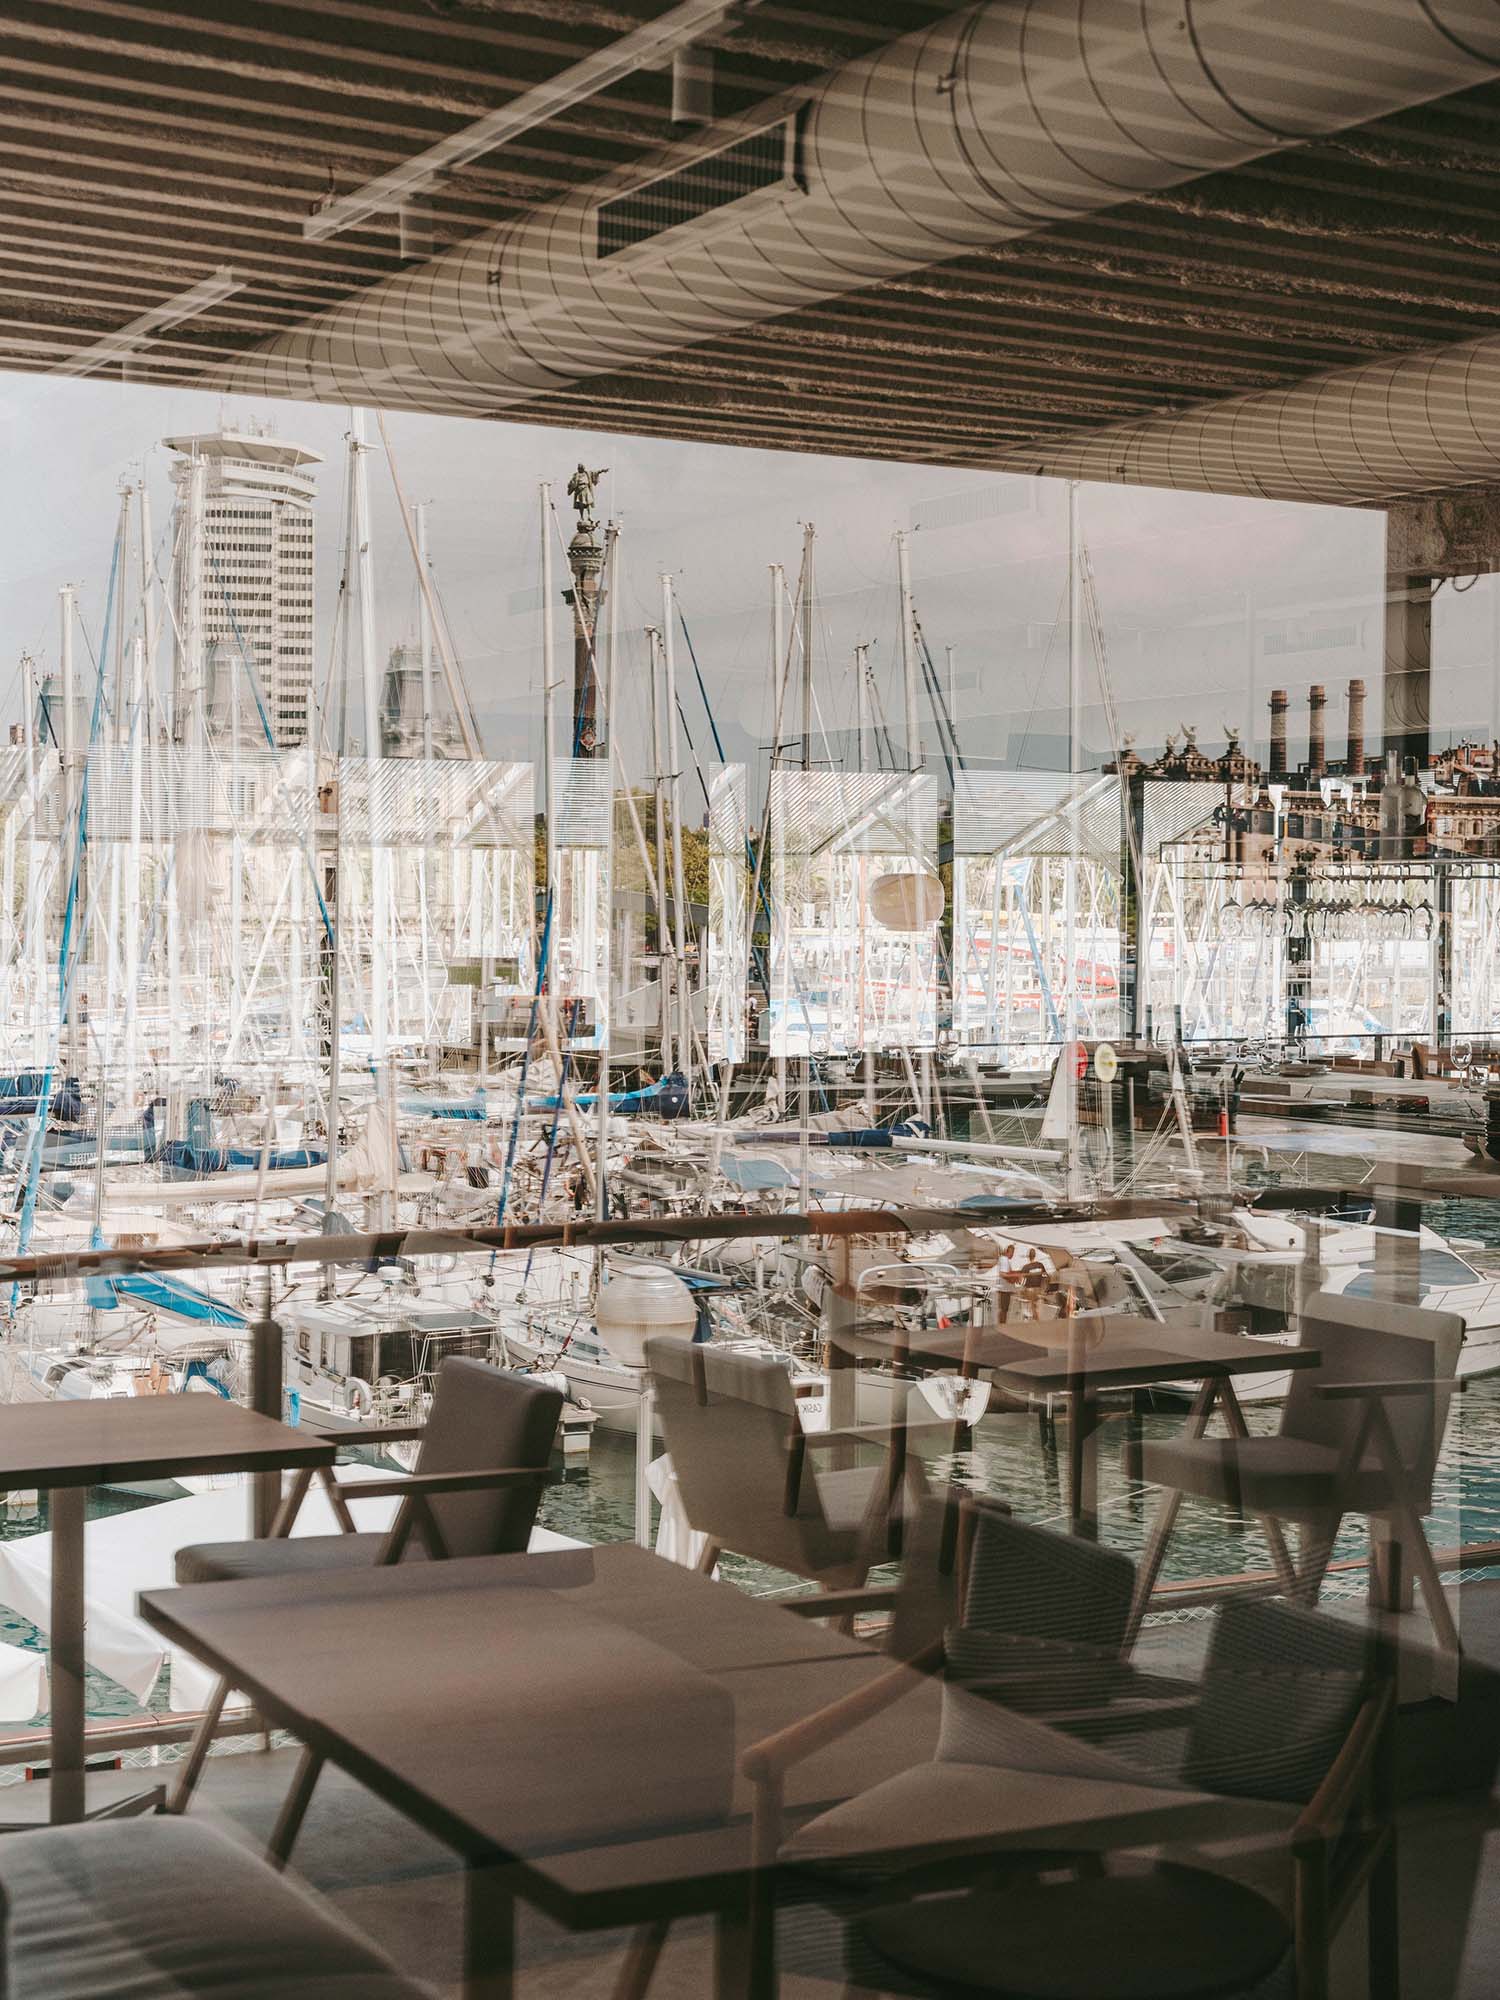 餐厅设计,Isern Serra Studio,休闲餐厅设计,巴塞罗那,现代风格餐厅设计案例,中性美学,海鲜酒吧餐厅